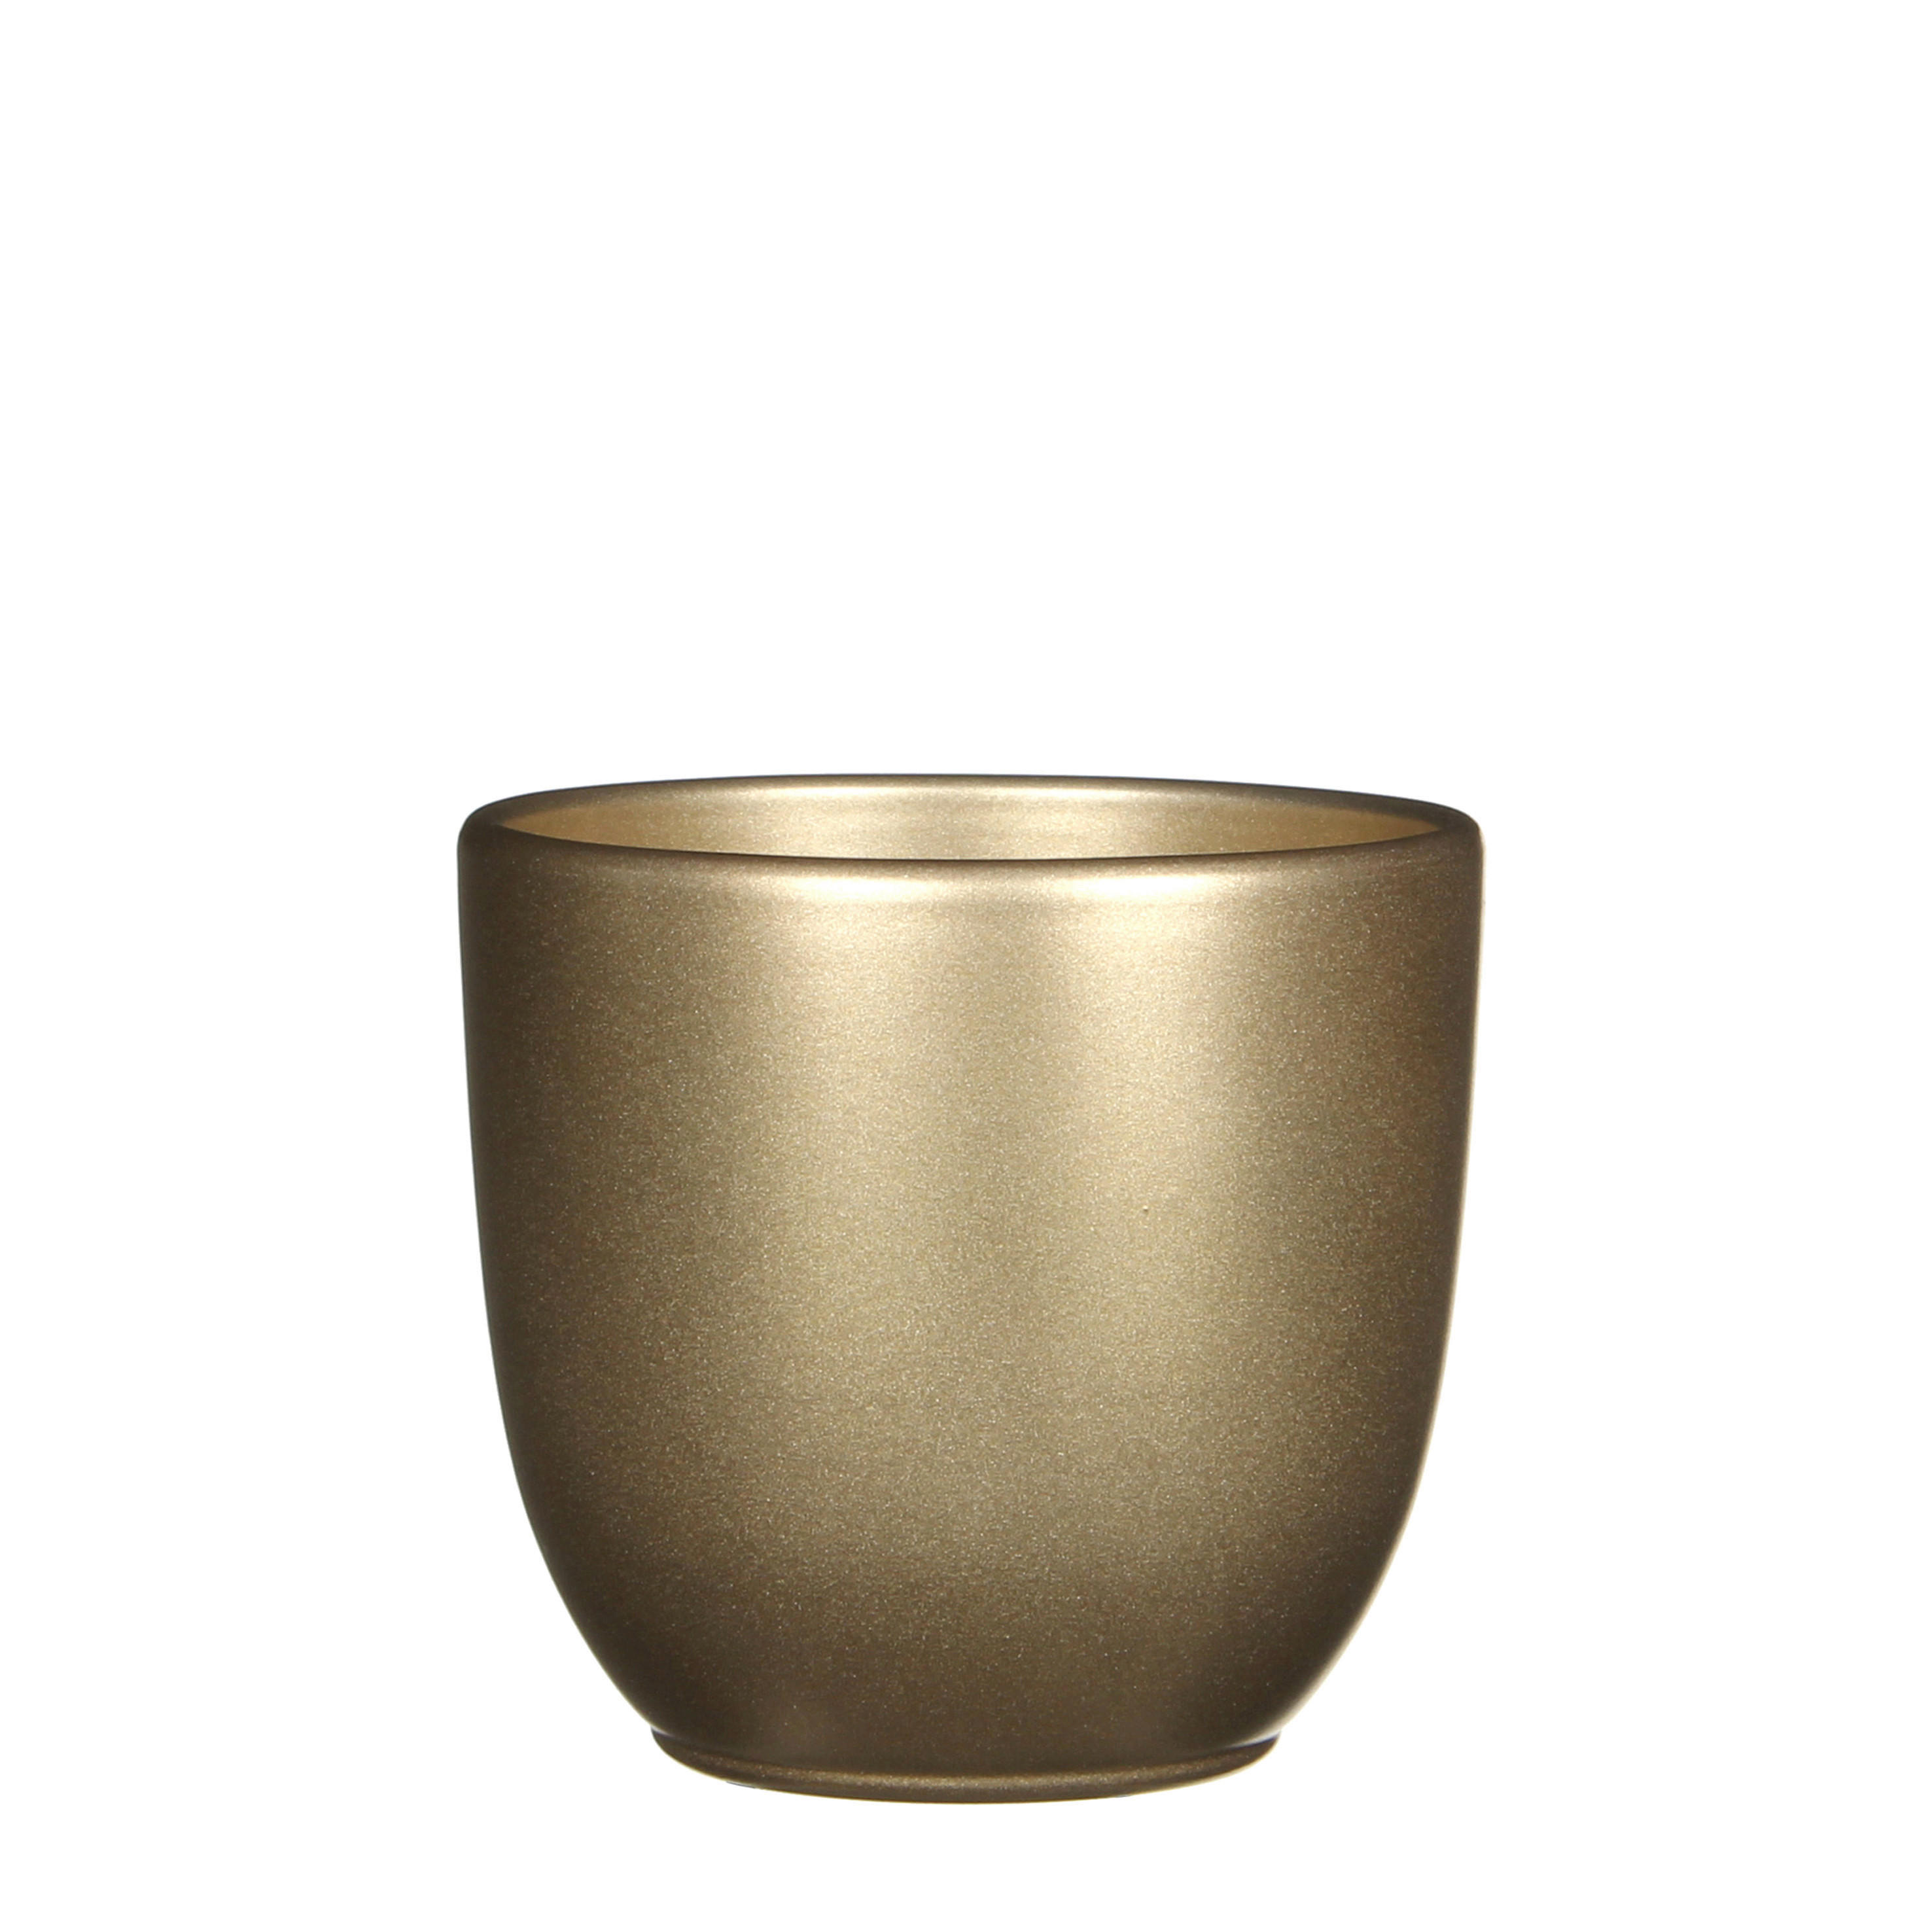 TEGLA ZA BILJKE  keramika  - zlatne boje, Basics, keramika (13,5/13cm)